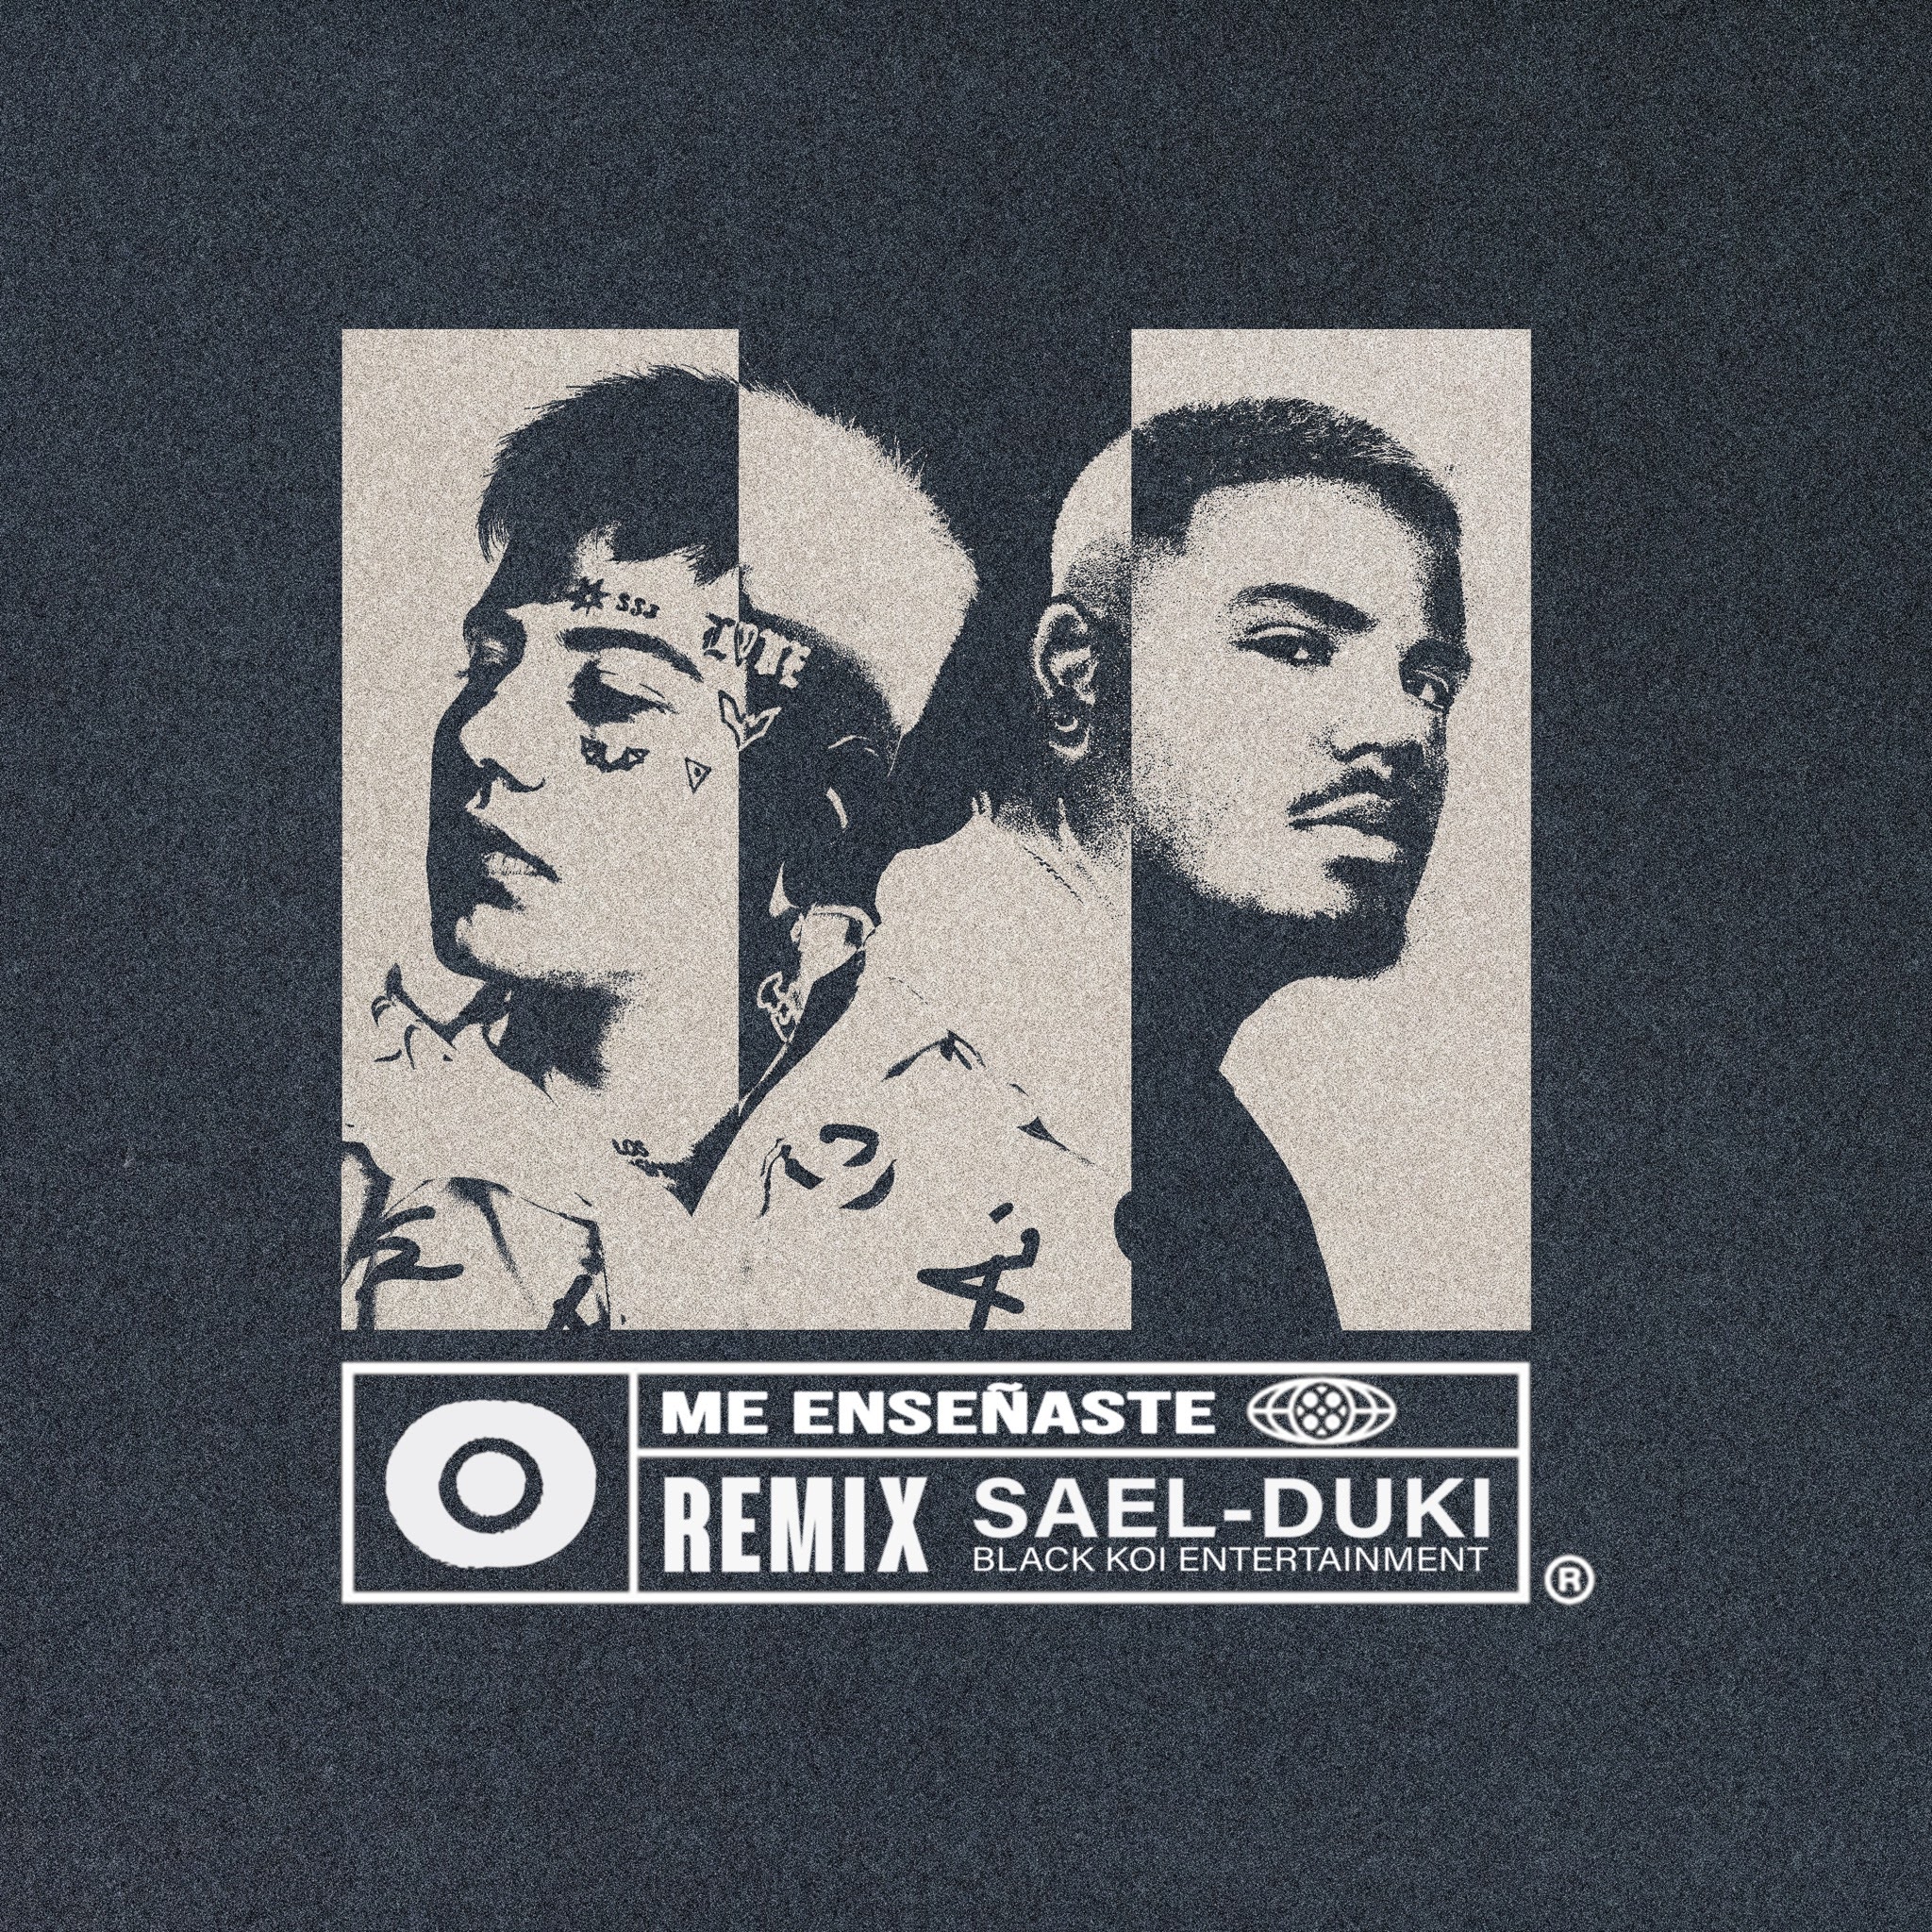 El nuevo fenómeno de la música urbana, Sael , lanza el remix oficial de “me enseñaste” junto a Duki